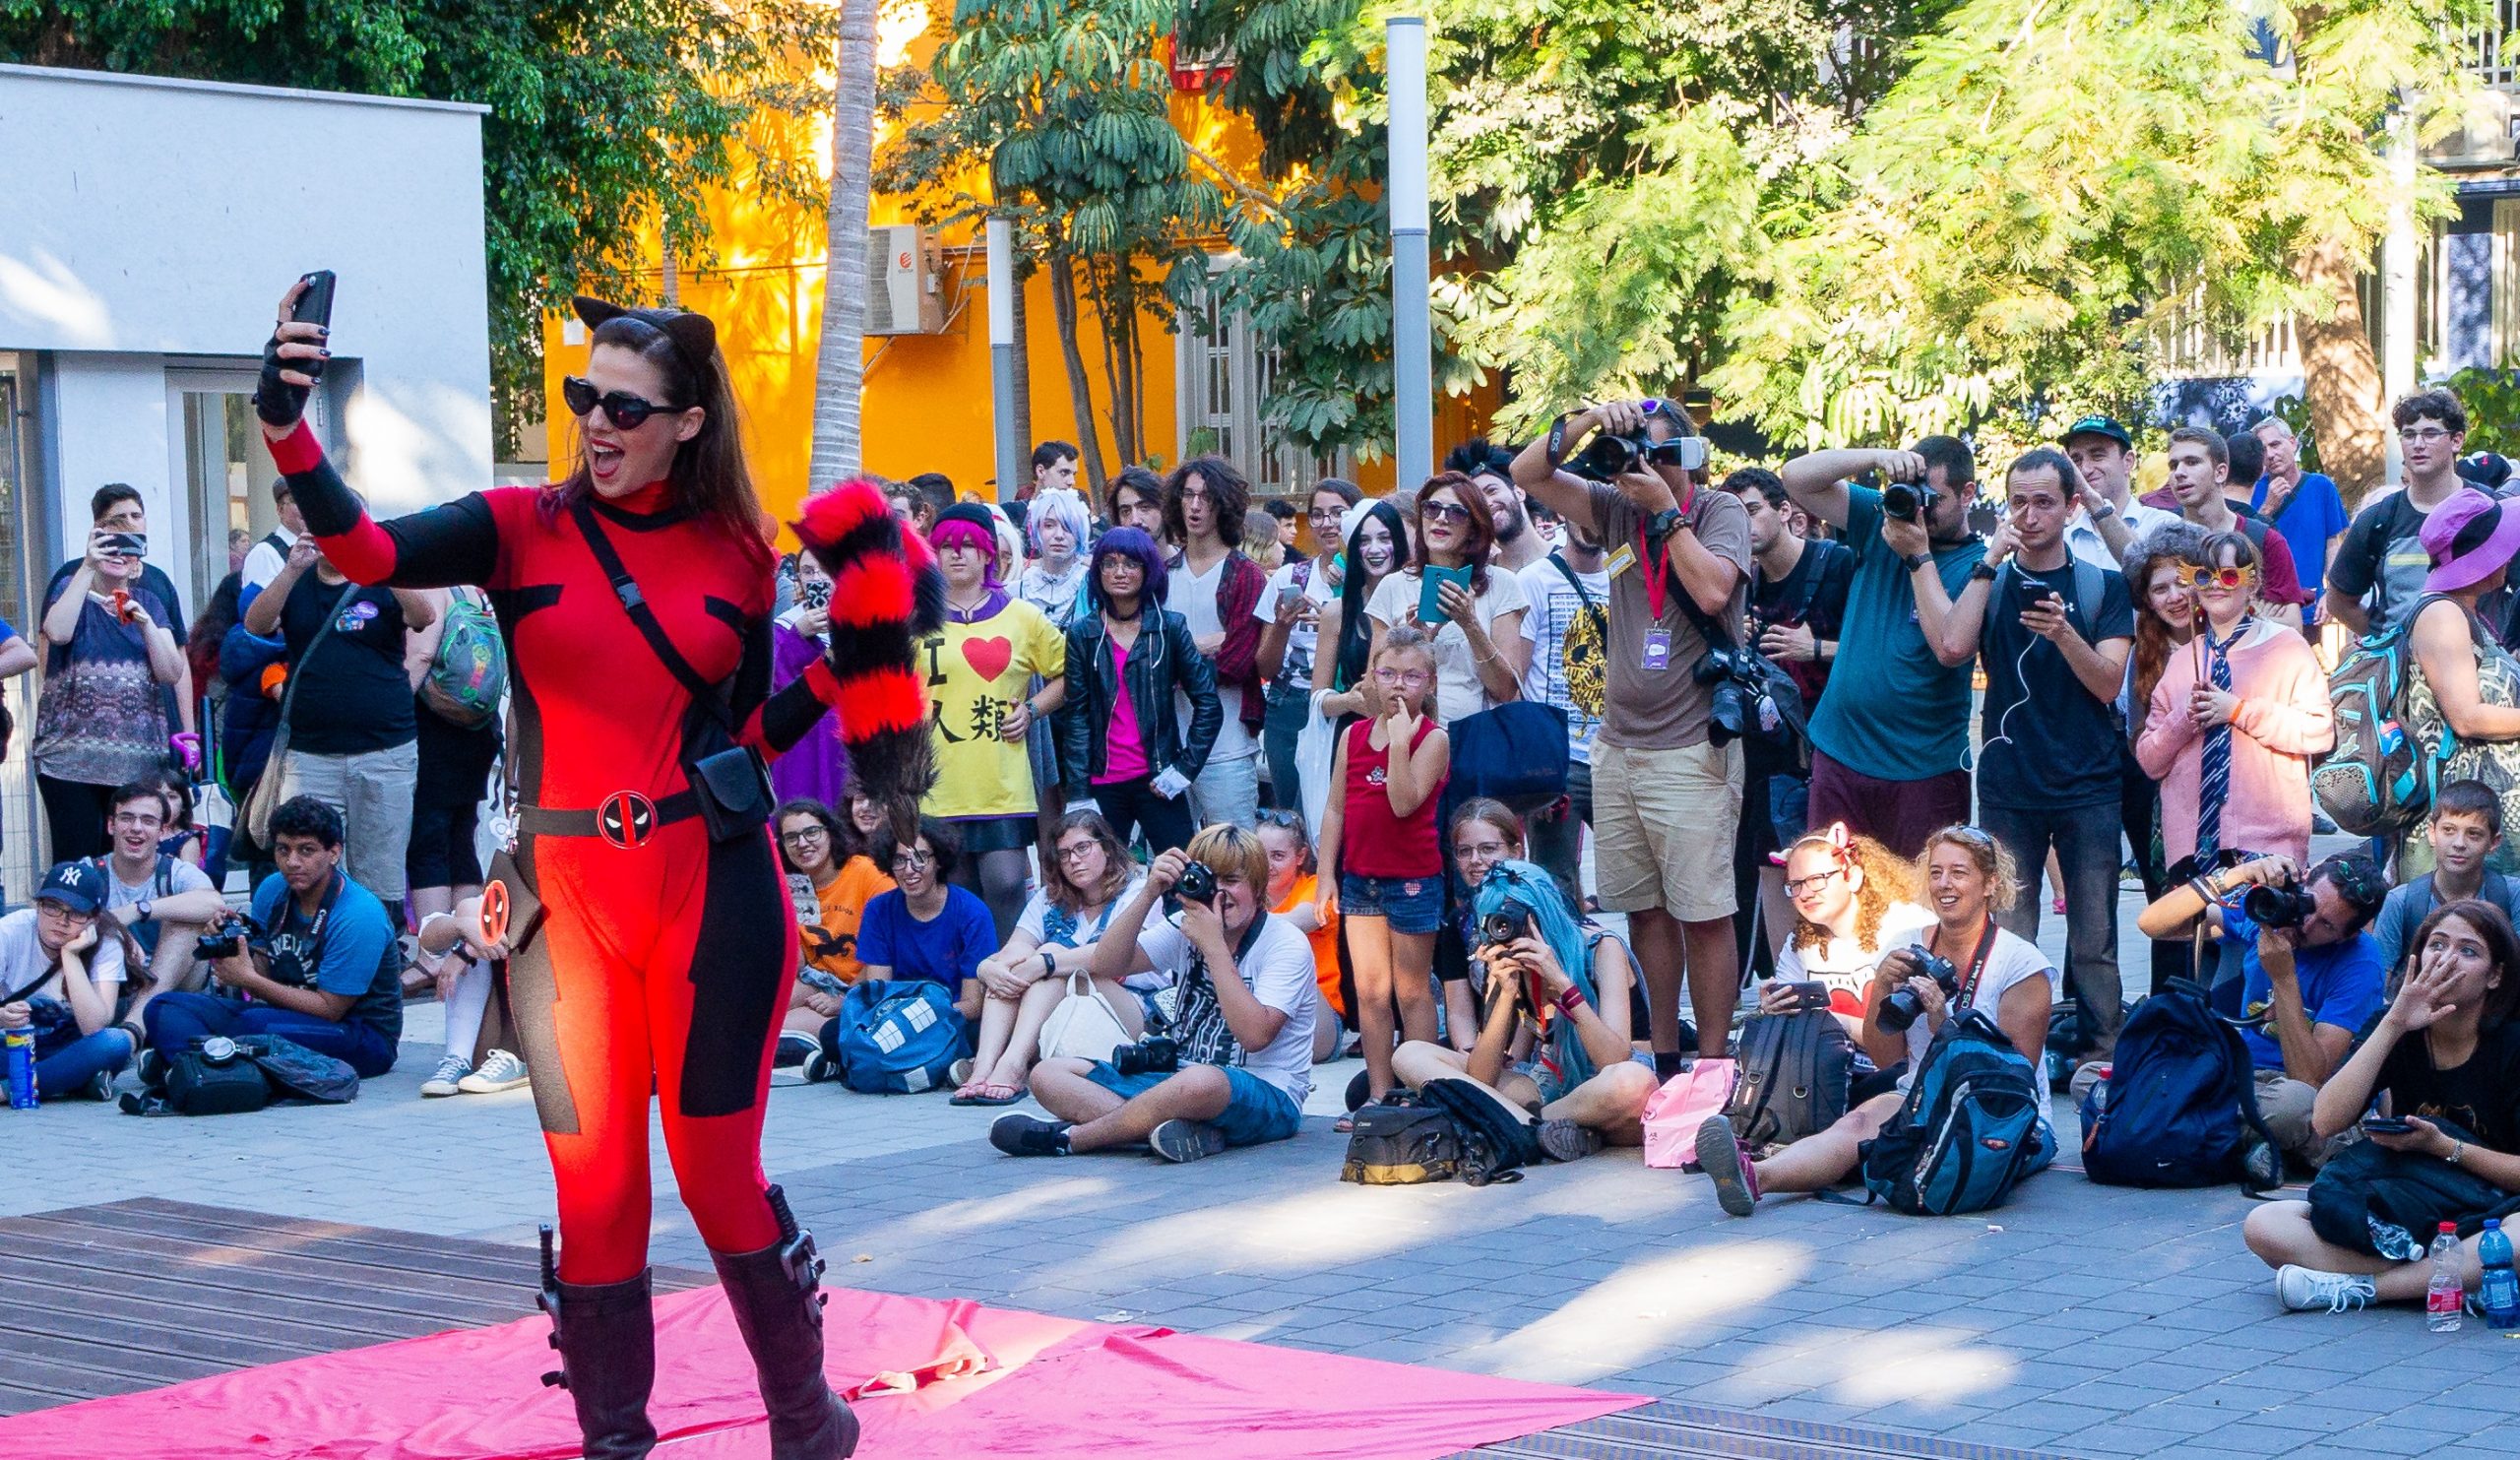 השטיח האדום - הבמה הפתוחה לקוספליירים באירוע חוצות המתקיים בשני ימי הפסטיבל הראשונים